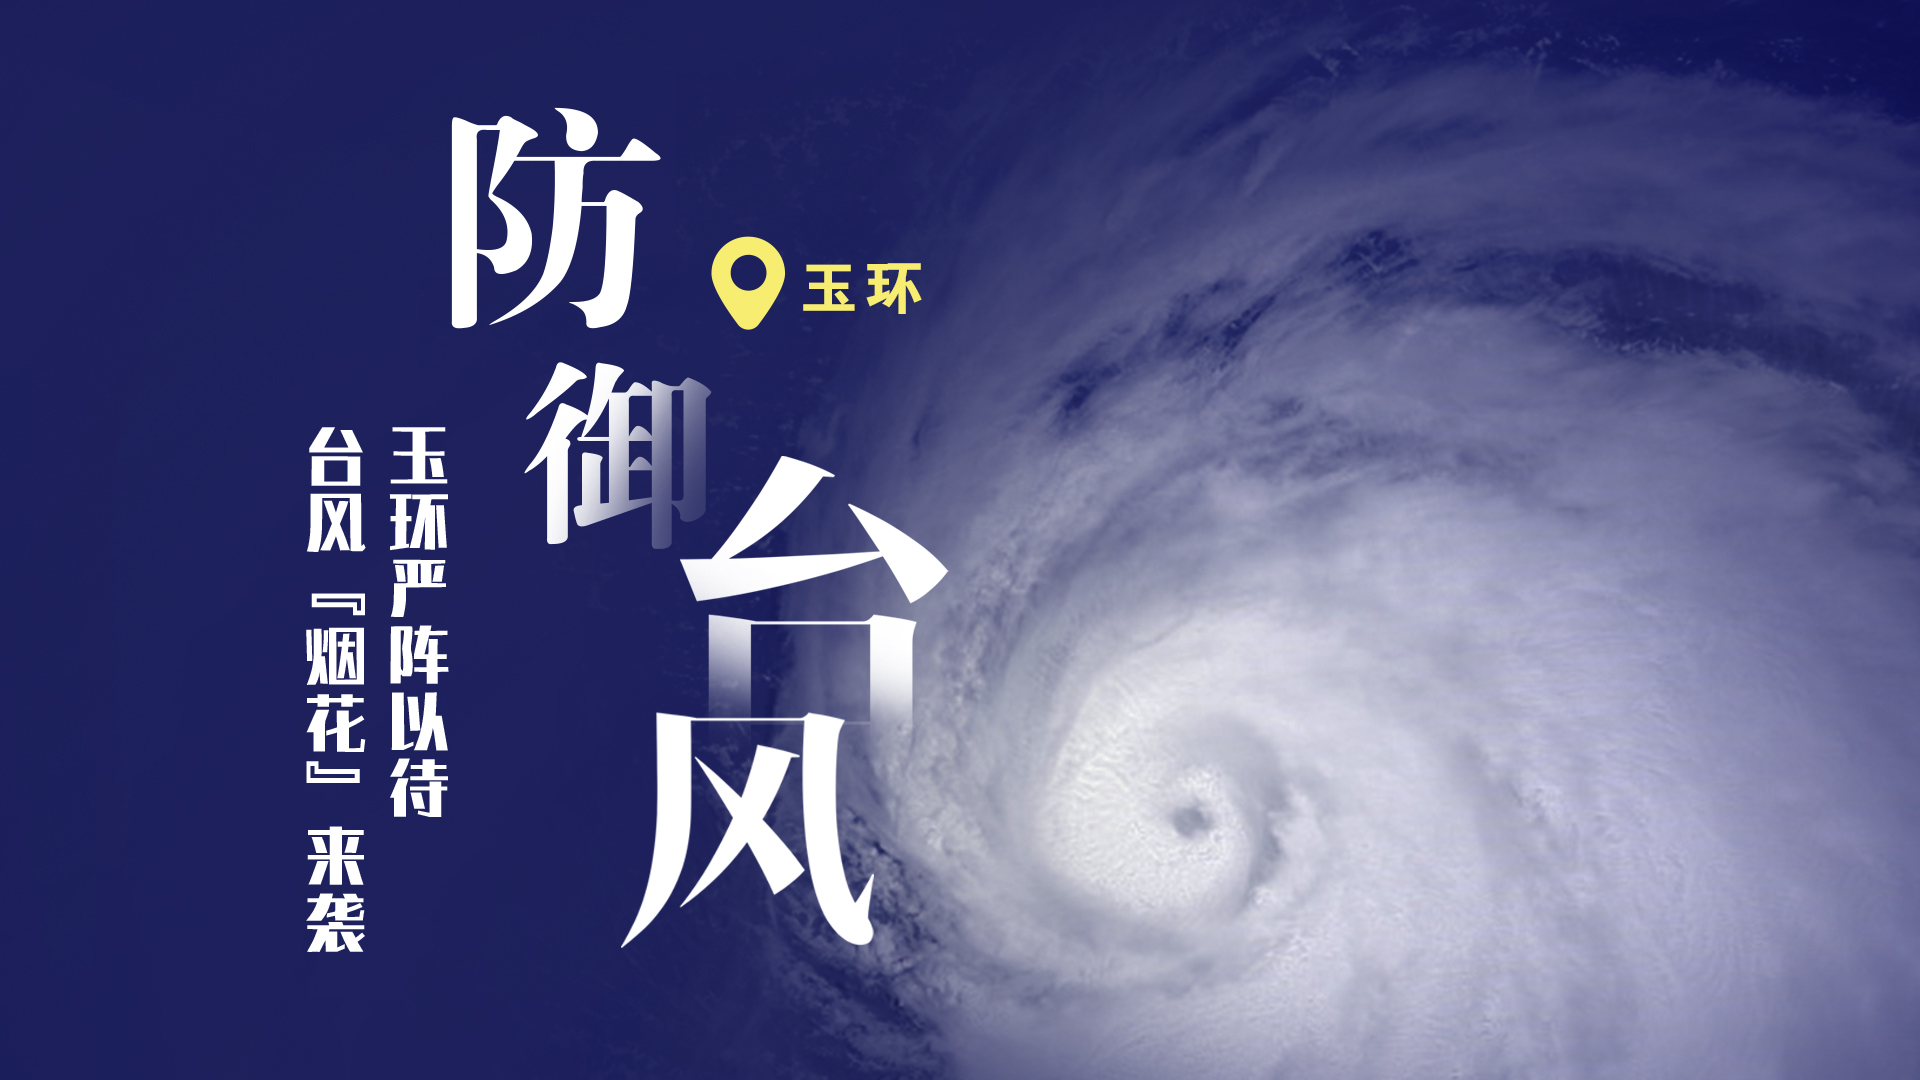 防御台风烟花 logo